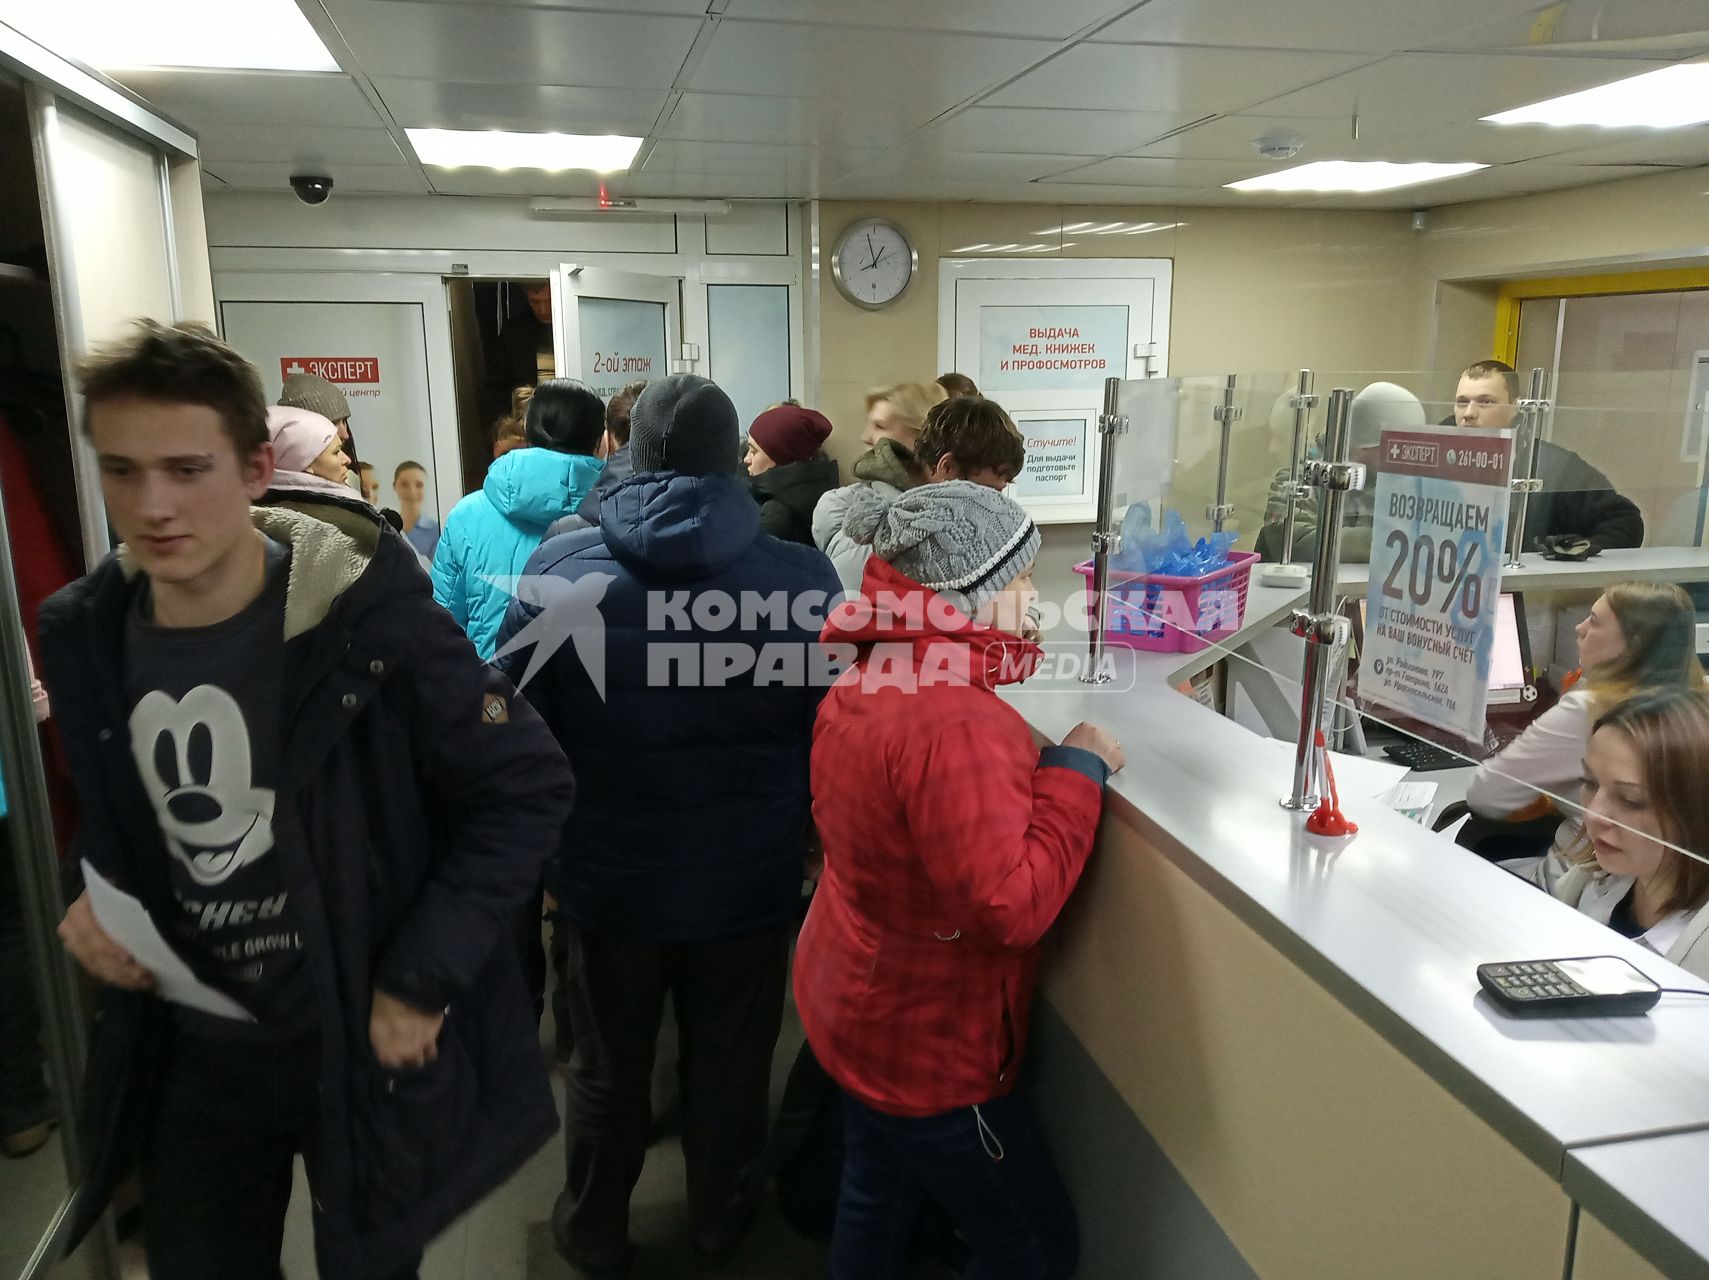 Нижний Новгород. Люди стоят в очереди за медицинскими справками для водительских прав.